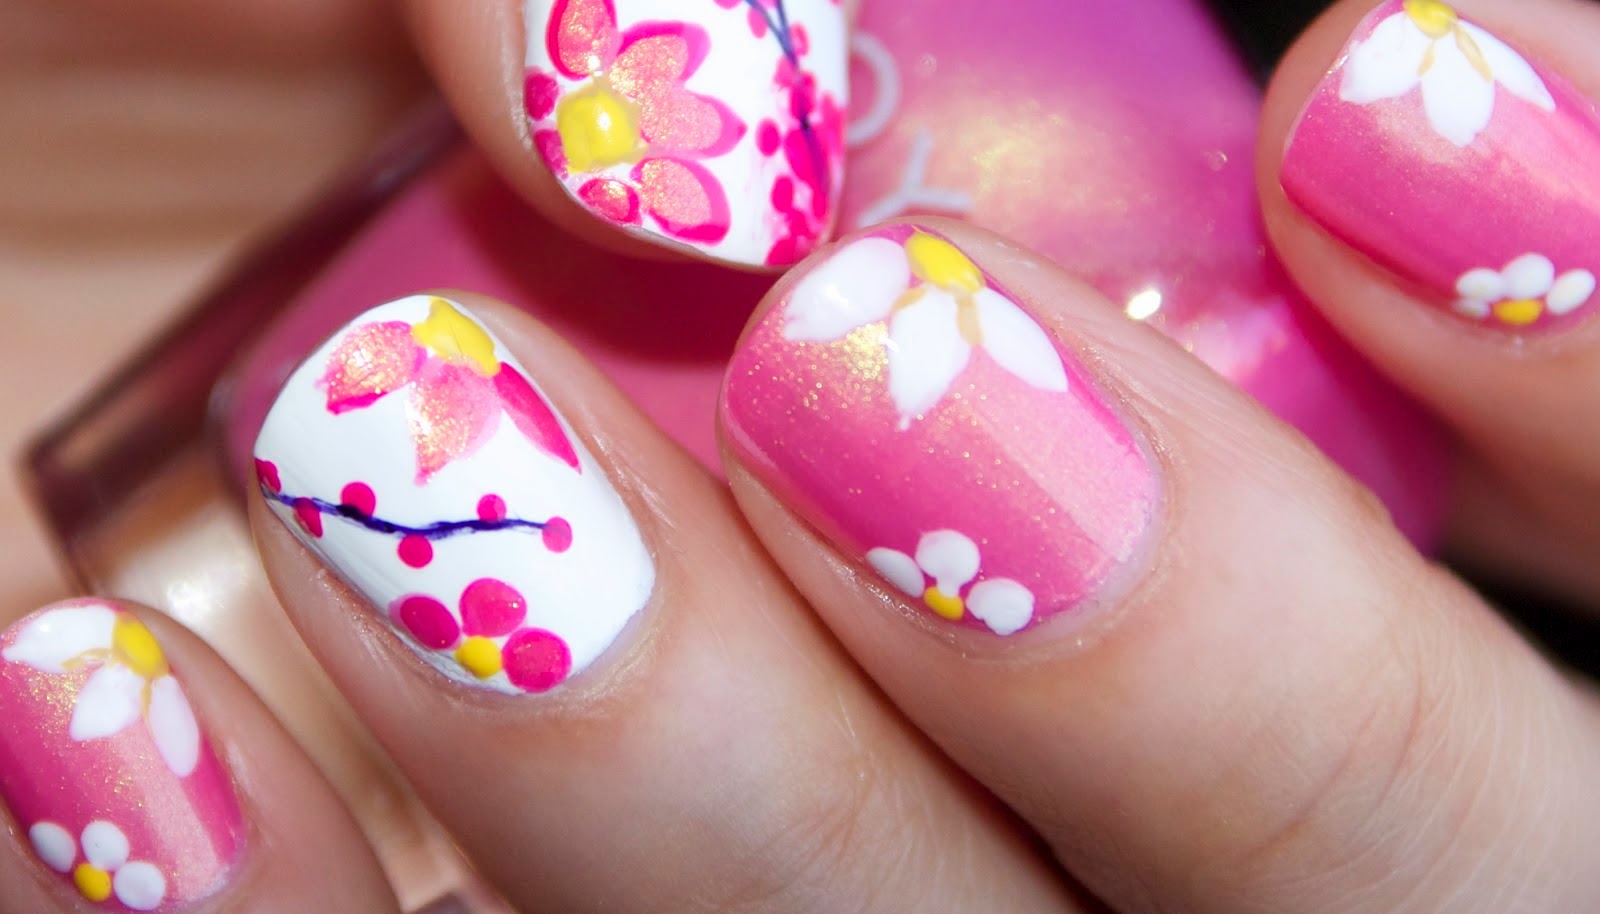 1. Spring Floral Nail Art Design - wide 5